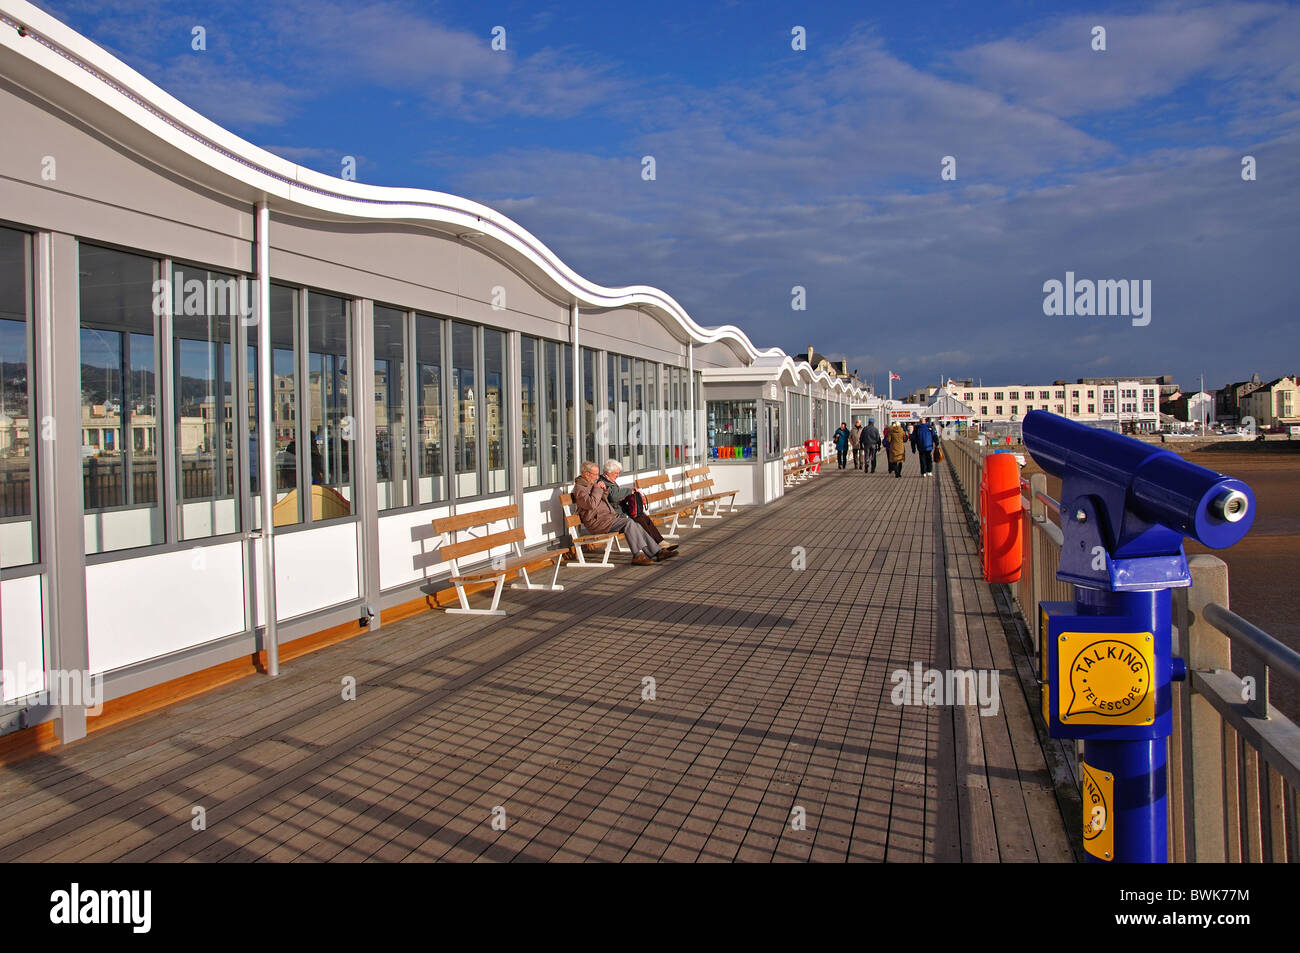 Il Grand Pier, Weston-super-Mare, Somerset, Inghilterra, Regno Unito Foto Stock